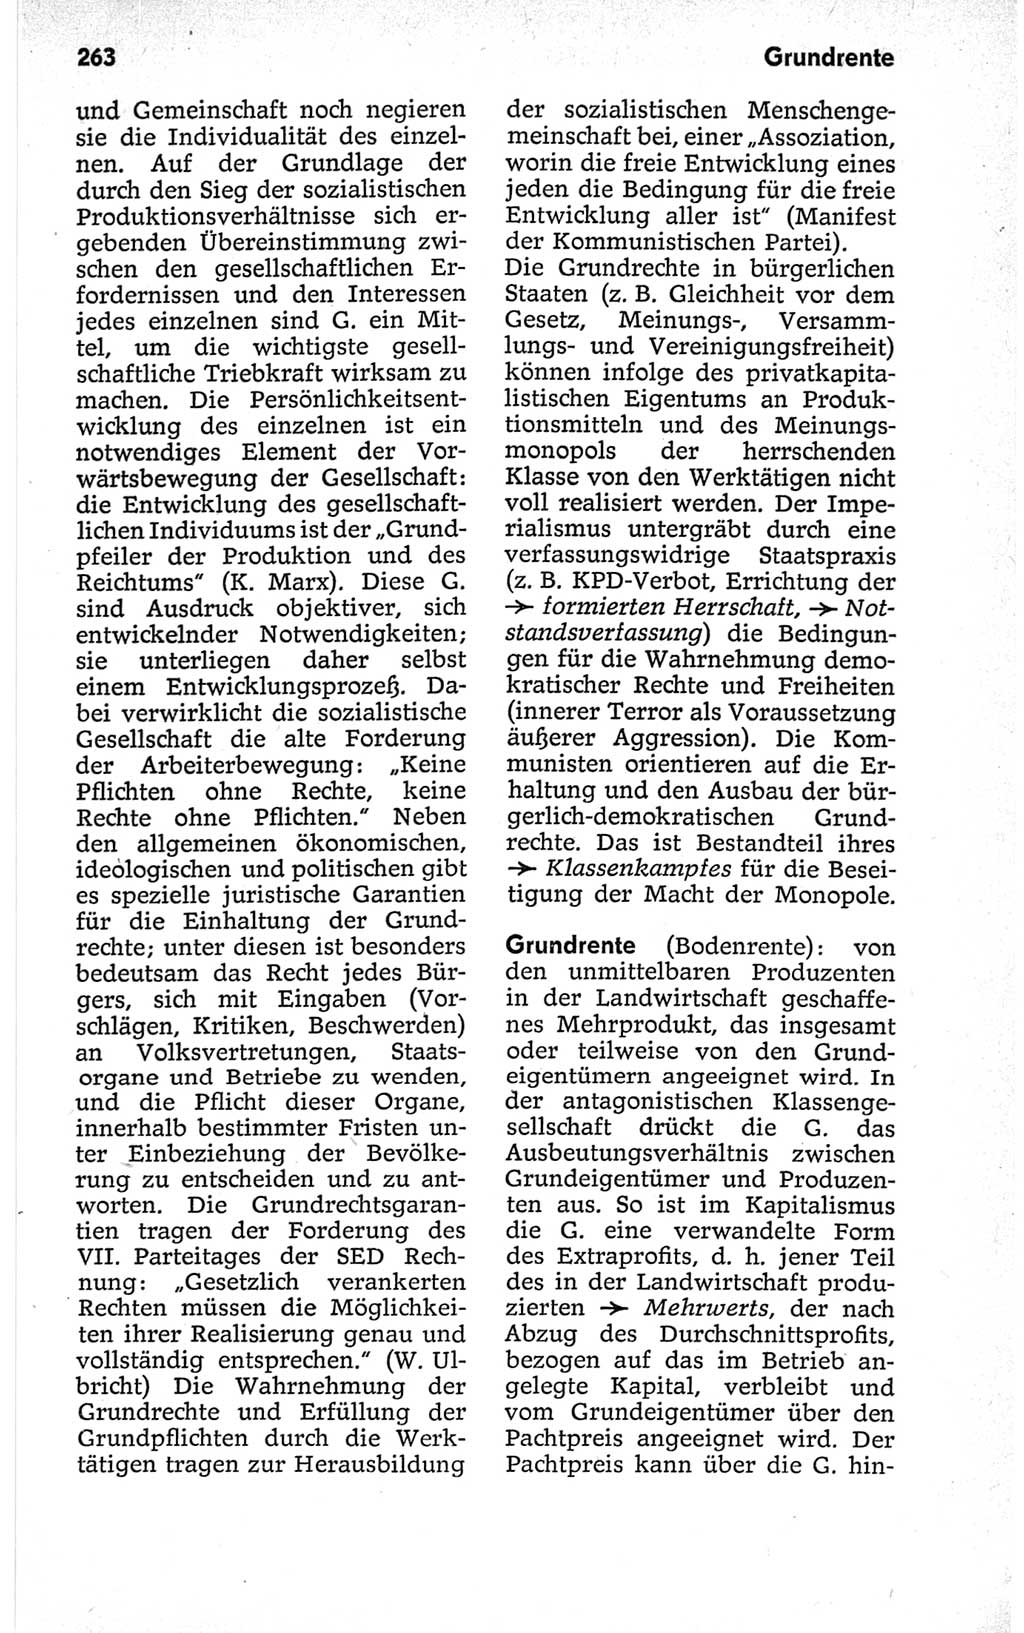 Kleines politisches Wörterbuch [Deutsche Demokratische Republik (DDR)] 1967, Seite 263 (Kl. pol. Wb. DDR 1967, S. 263)